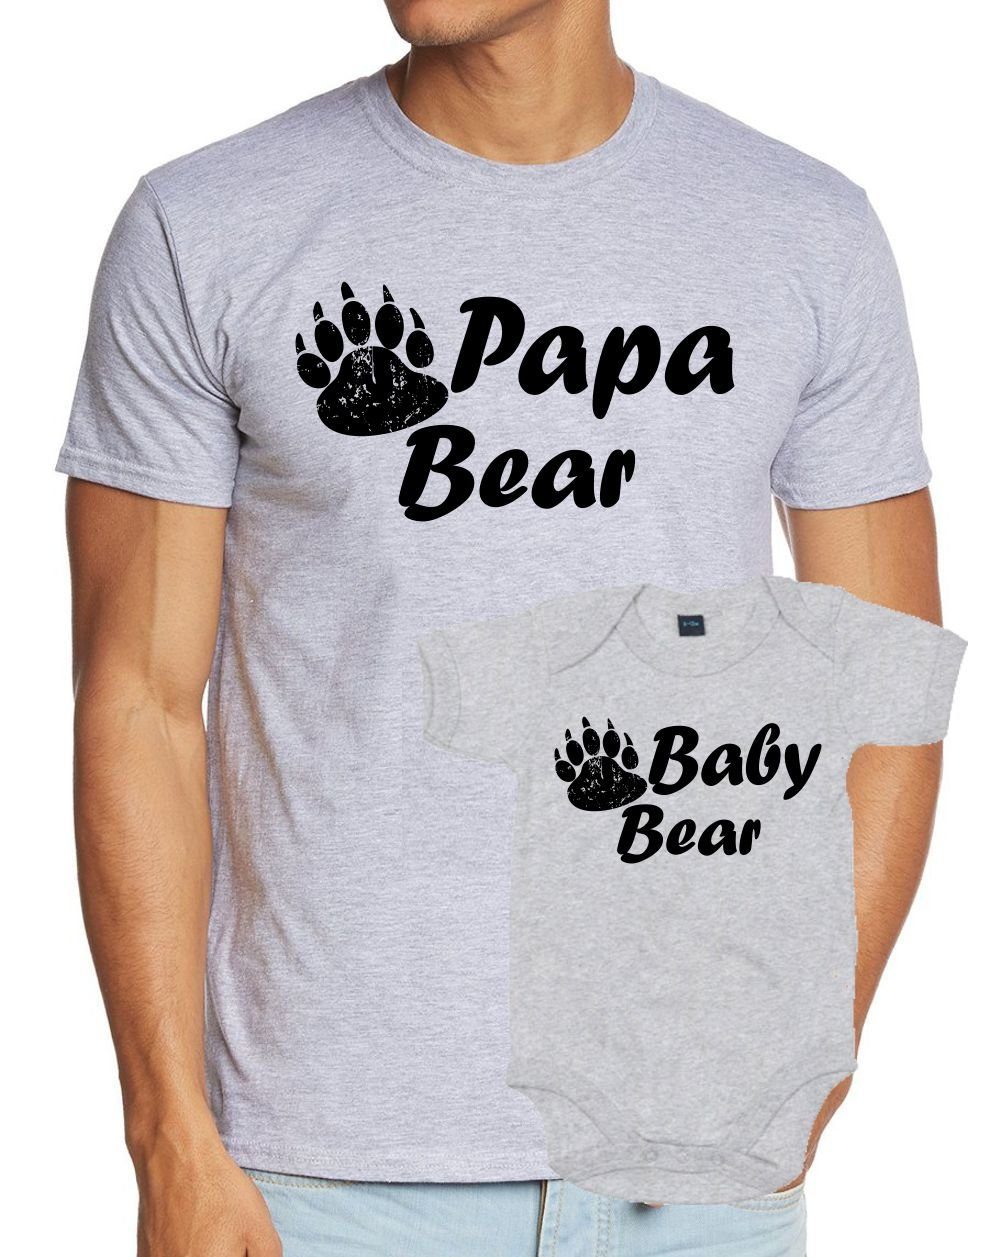 + Hellgrau Baby Geburt meliert - T-Shirt Neuling Papa + Bear Strampler Set Strampler zur Bear coole-fun-t-shirts